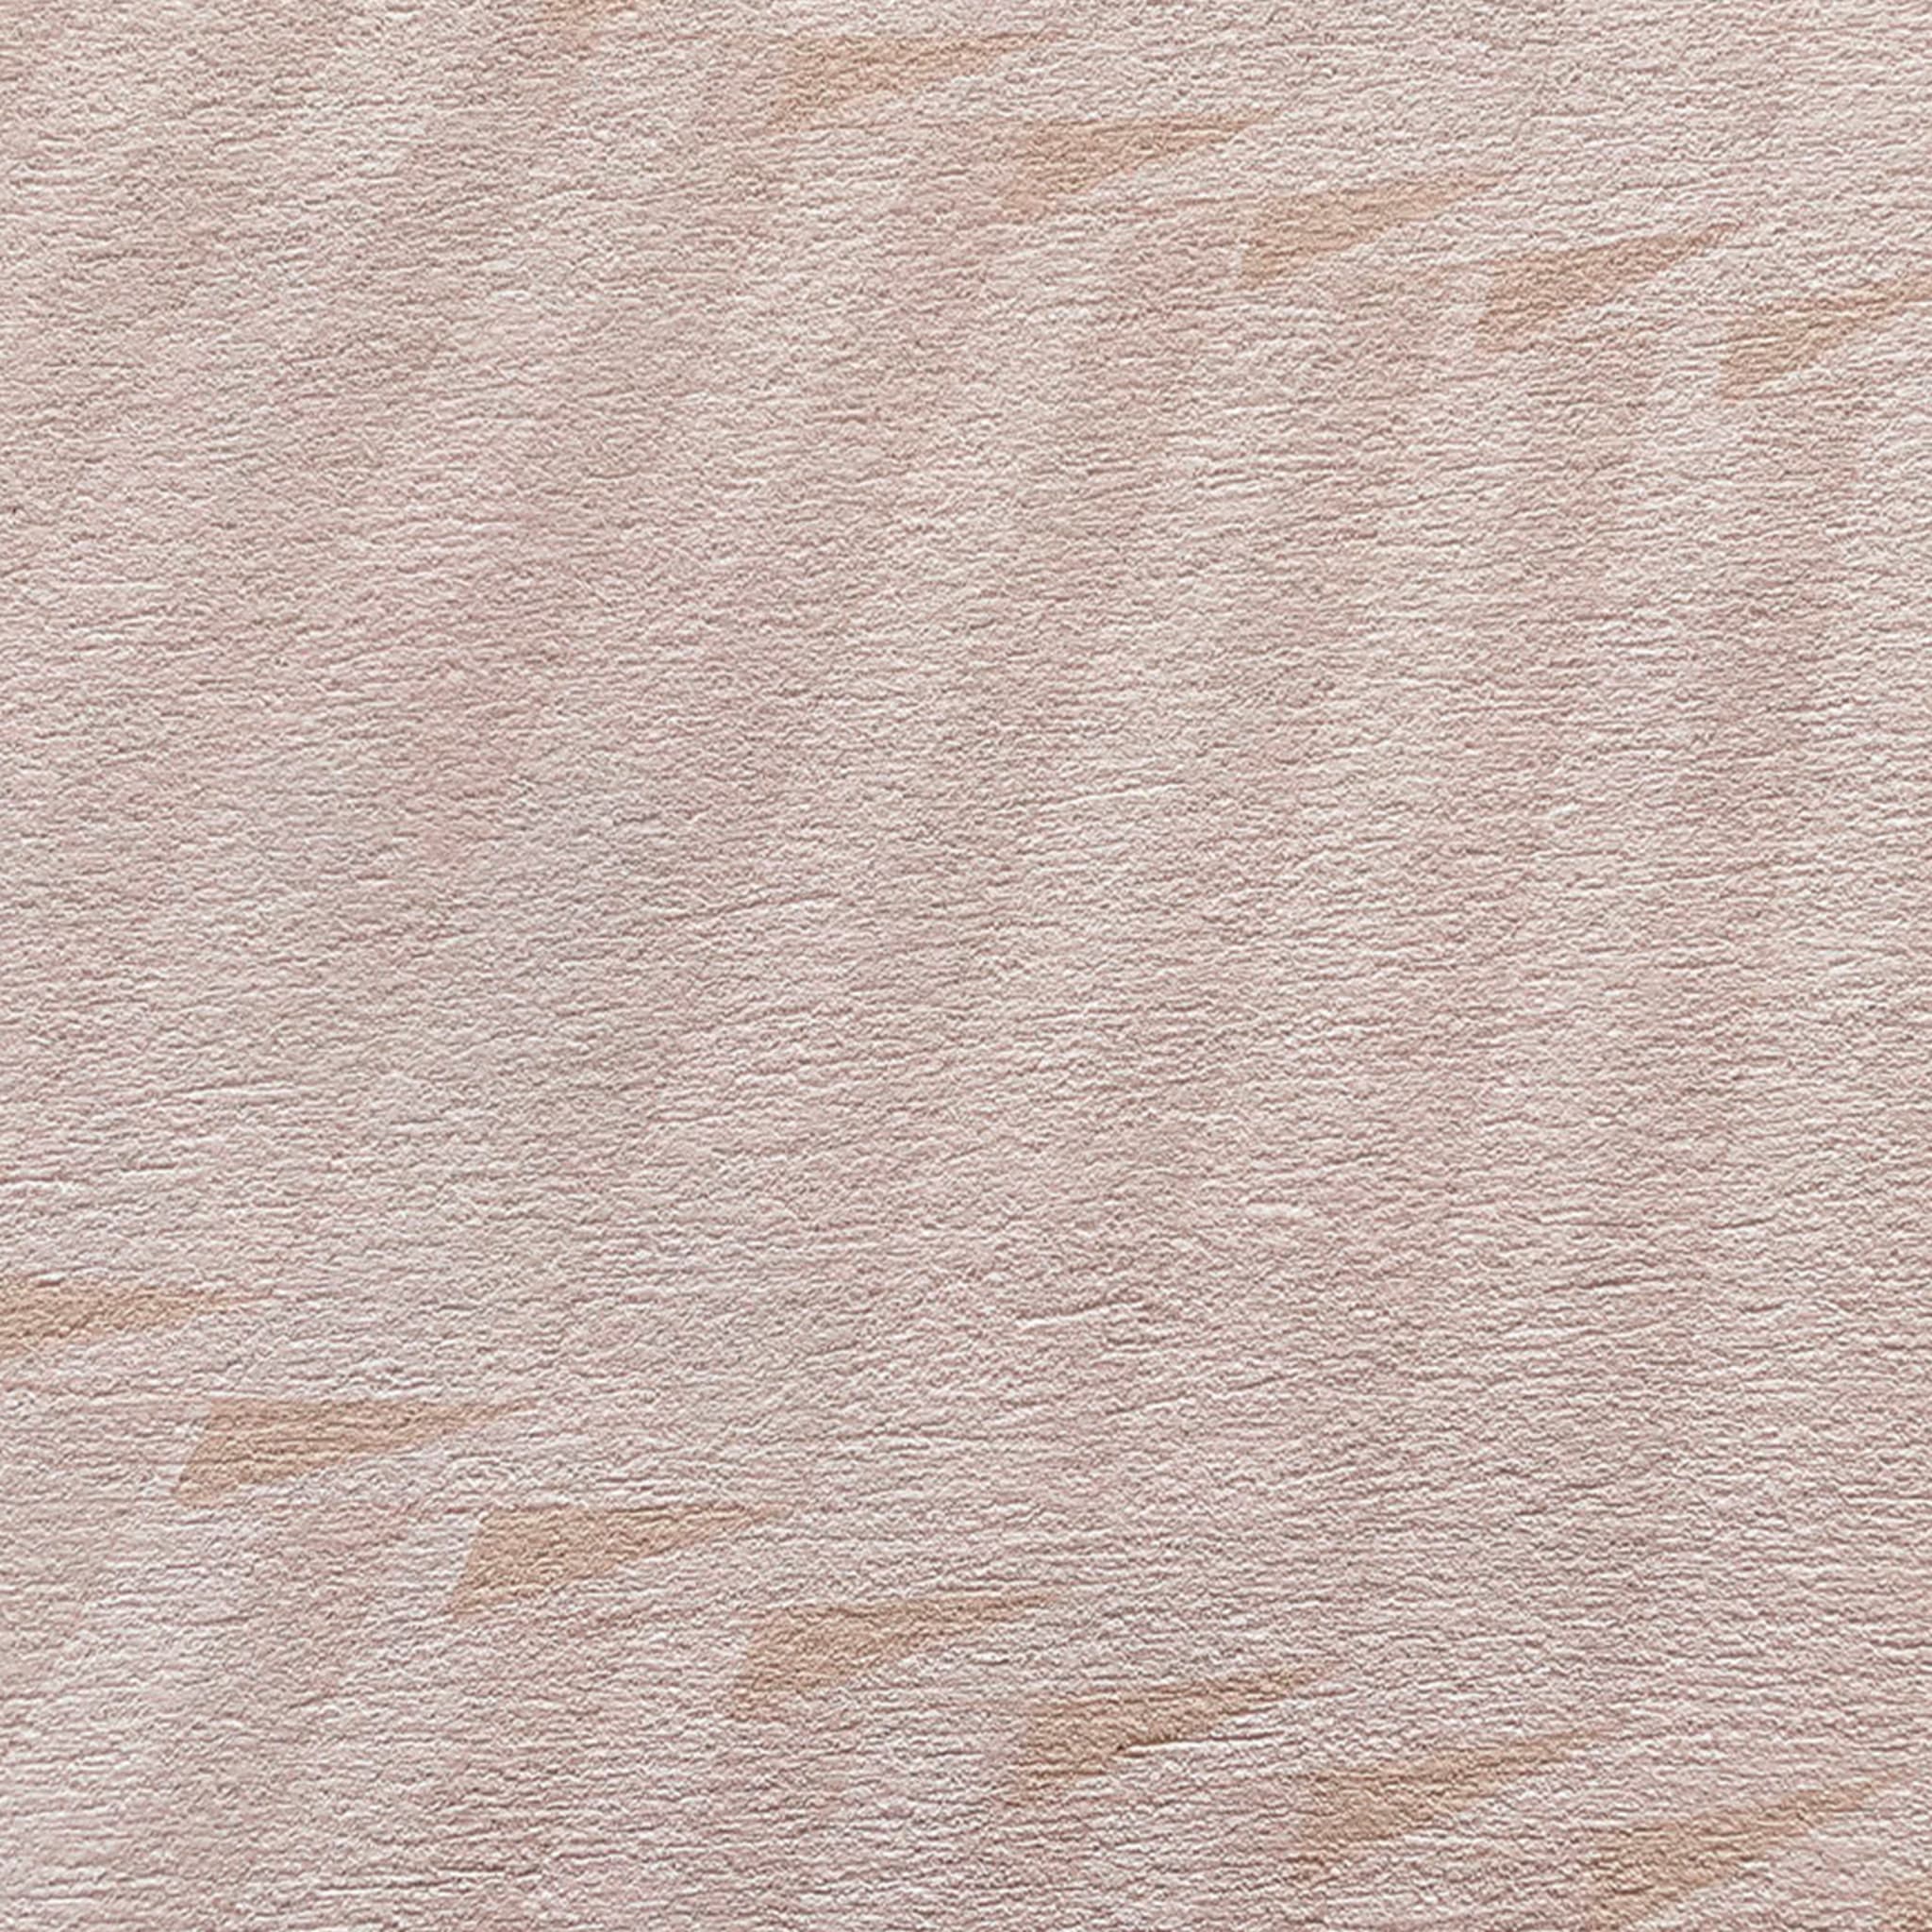 Pink Fan vertical plissé wallpaper - Alternative view 1